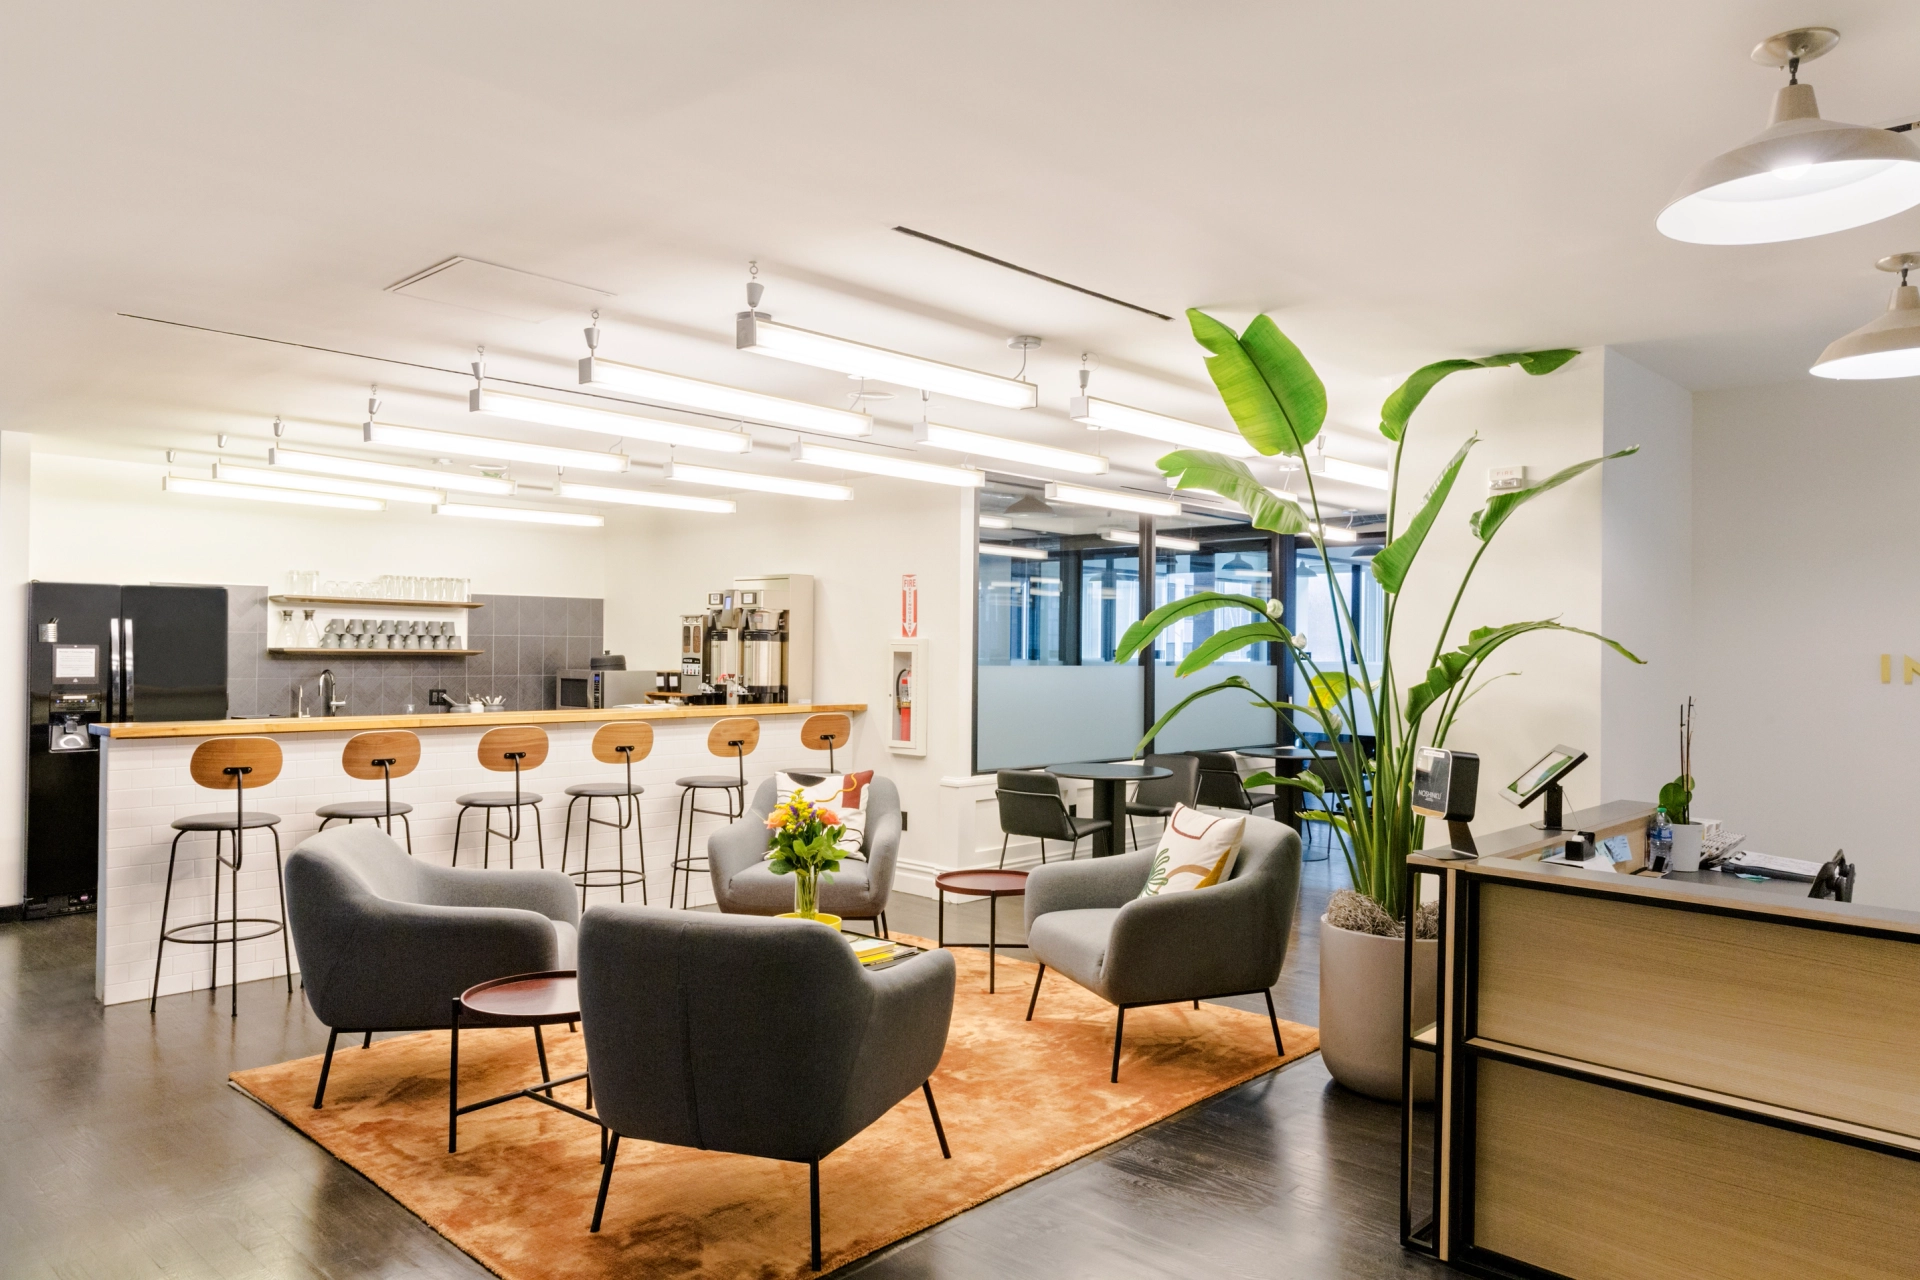 Un espace de travail de bureau moderne avec des chaises et une plante.